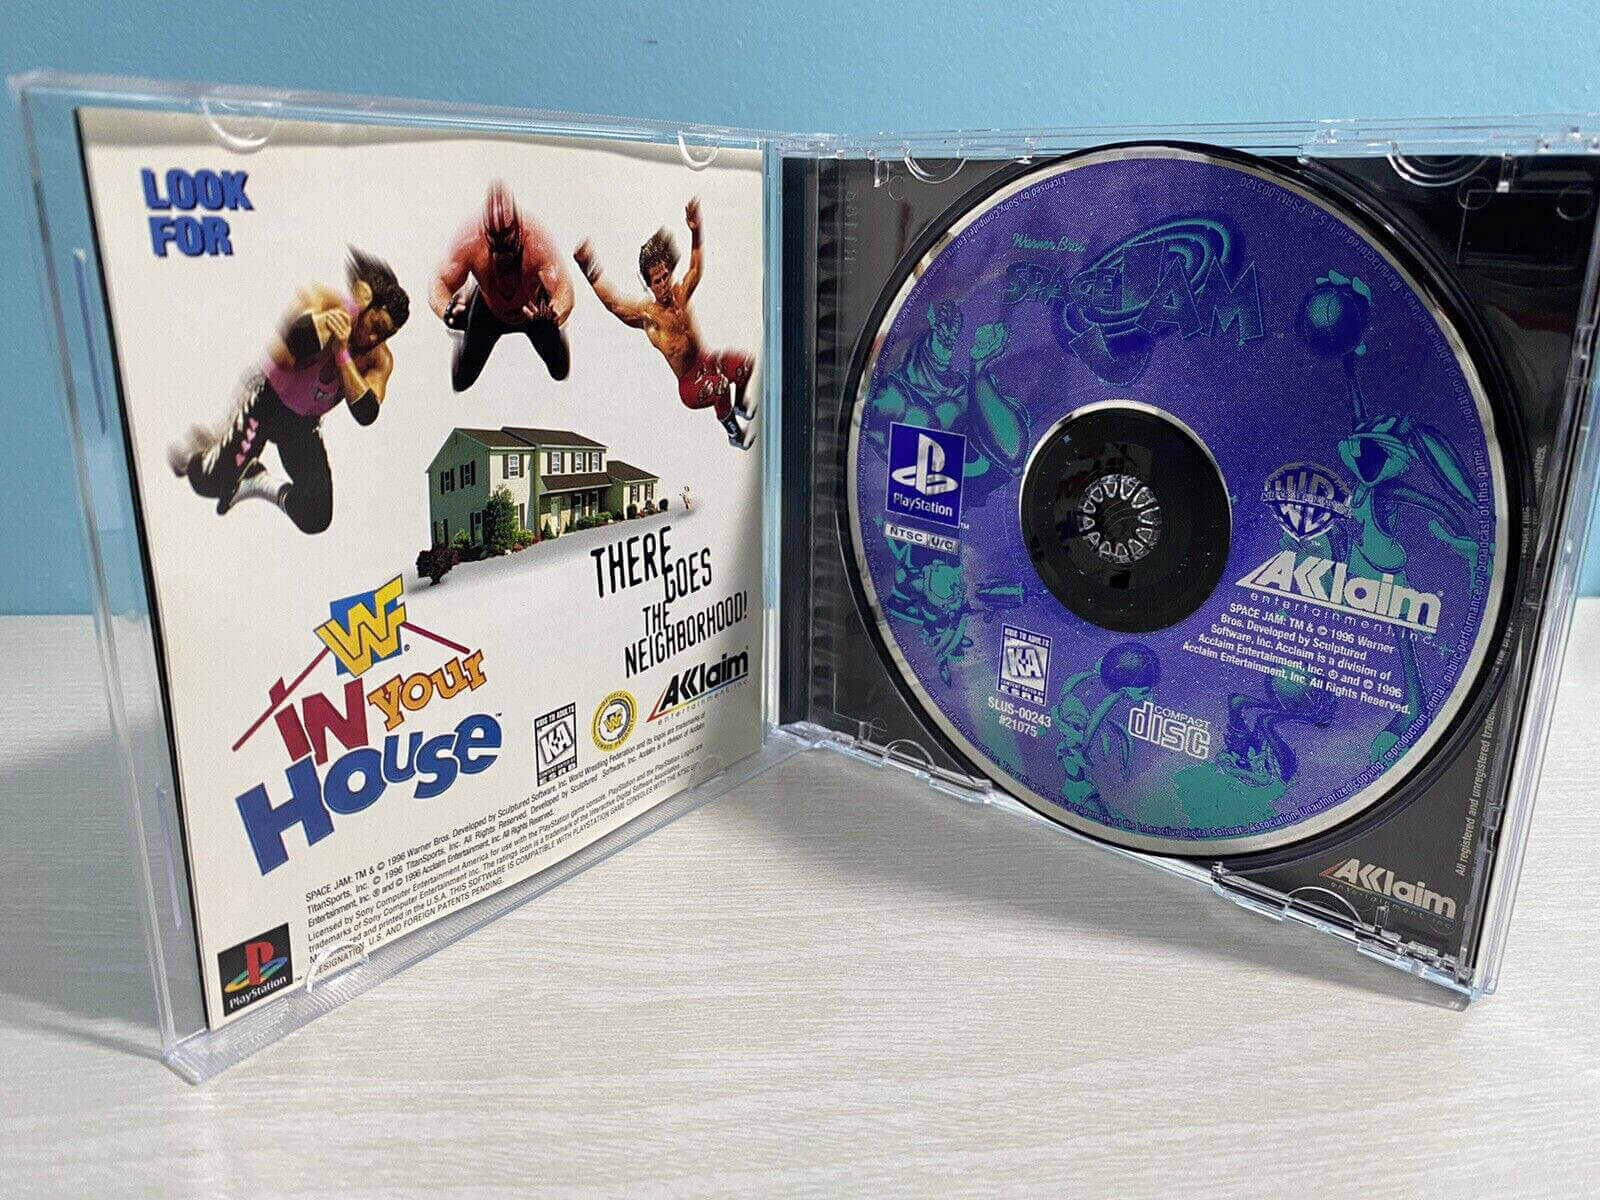 Лицензионный диск Space Jam для PlayStation